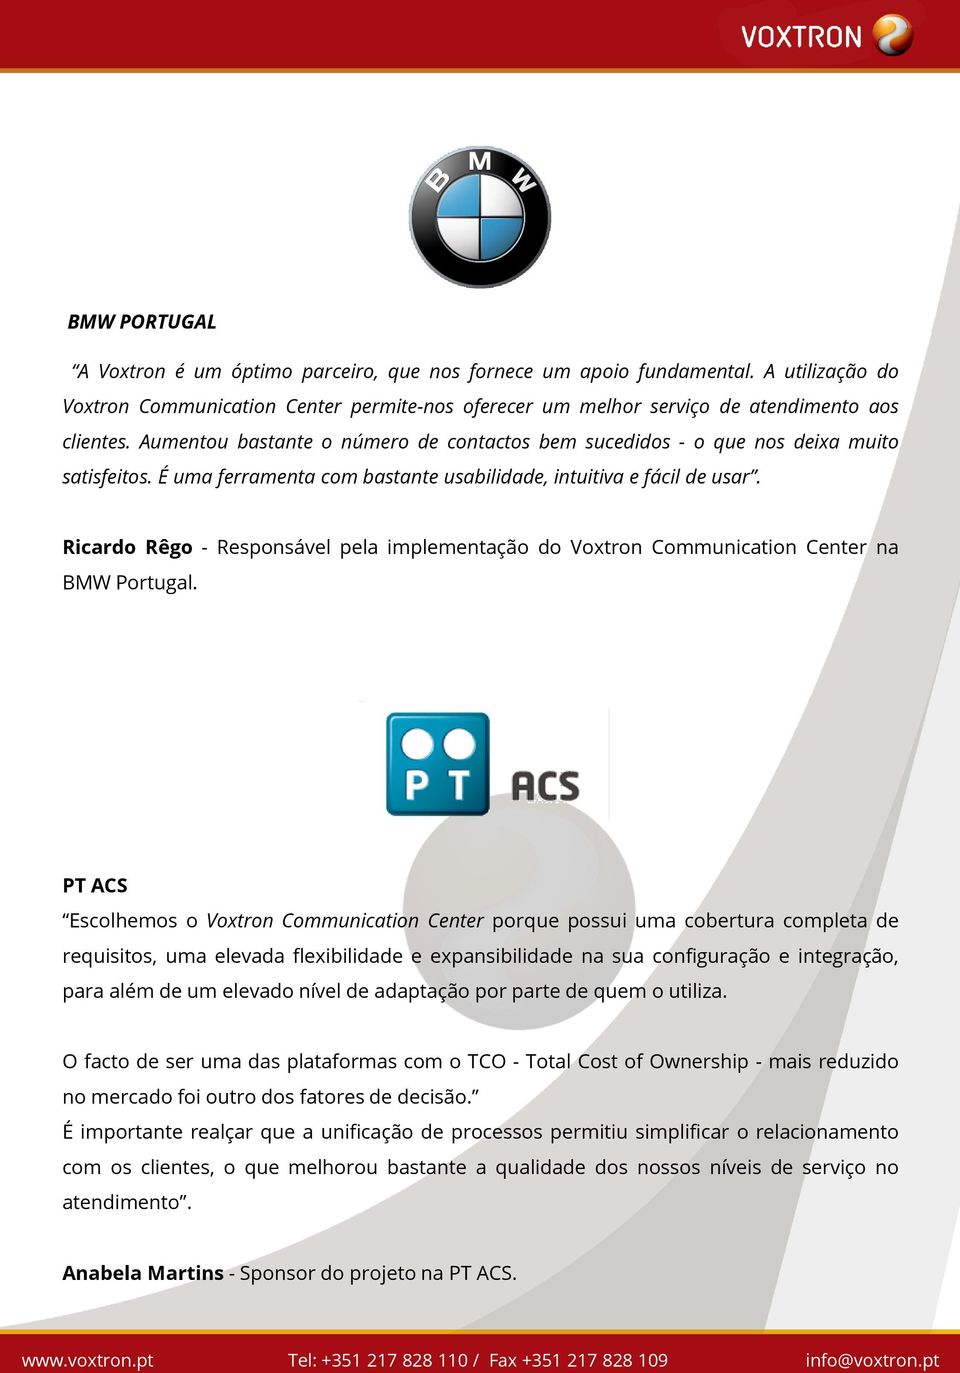 Ricardo Rêgo - Responsável pela implementação do Voxtron Communication Center na BMW Portugal.